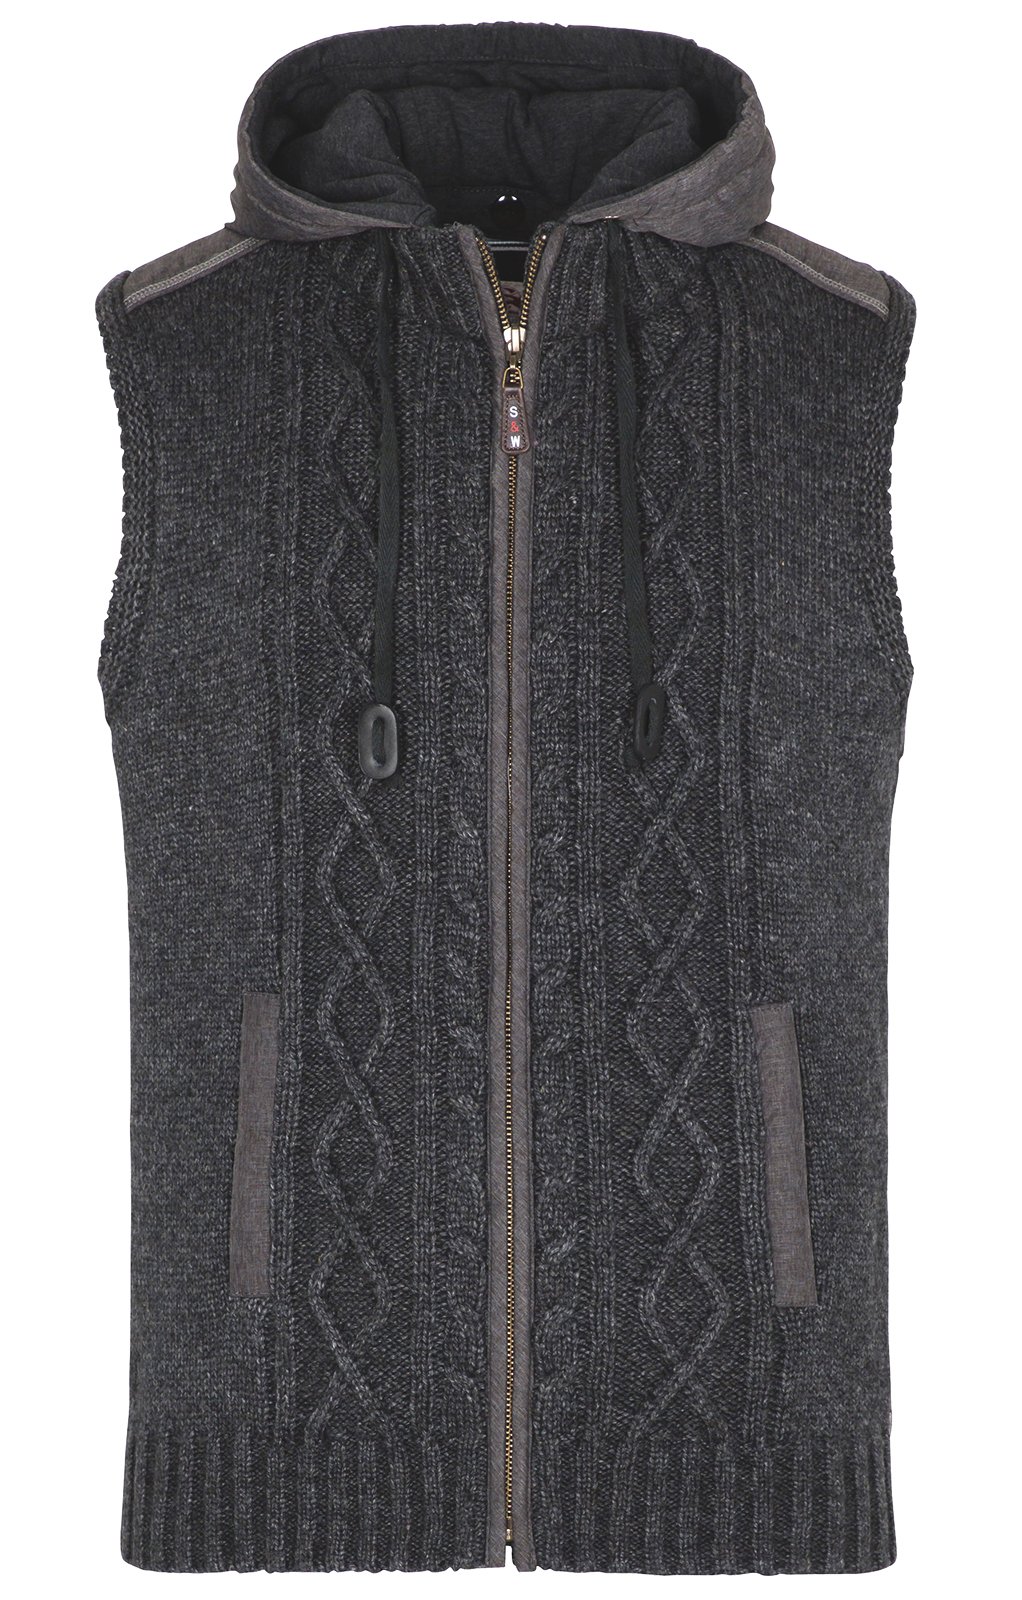 weitere Bilder von Traditional vest HAINBURG Hoodie dark gray